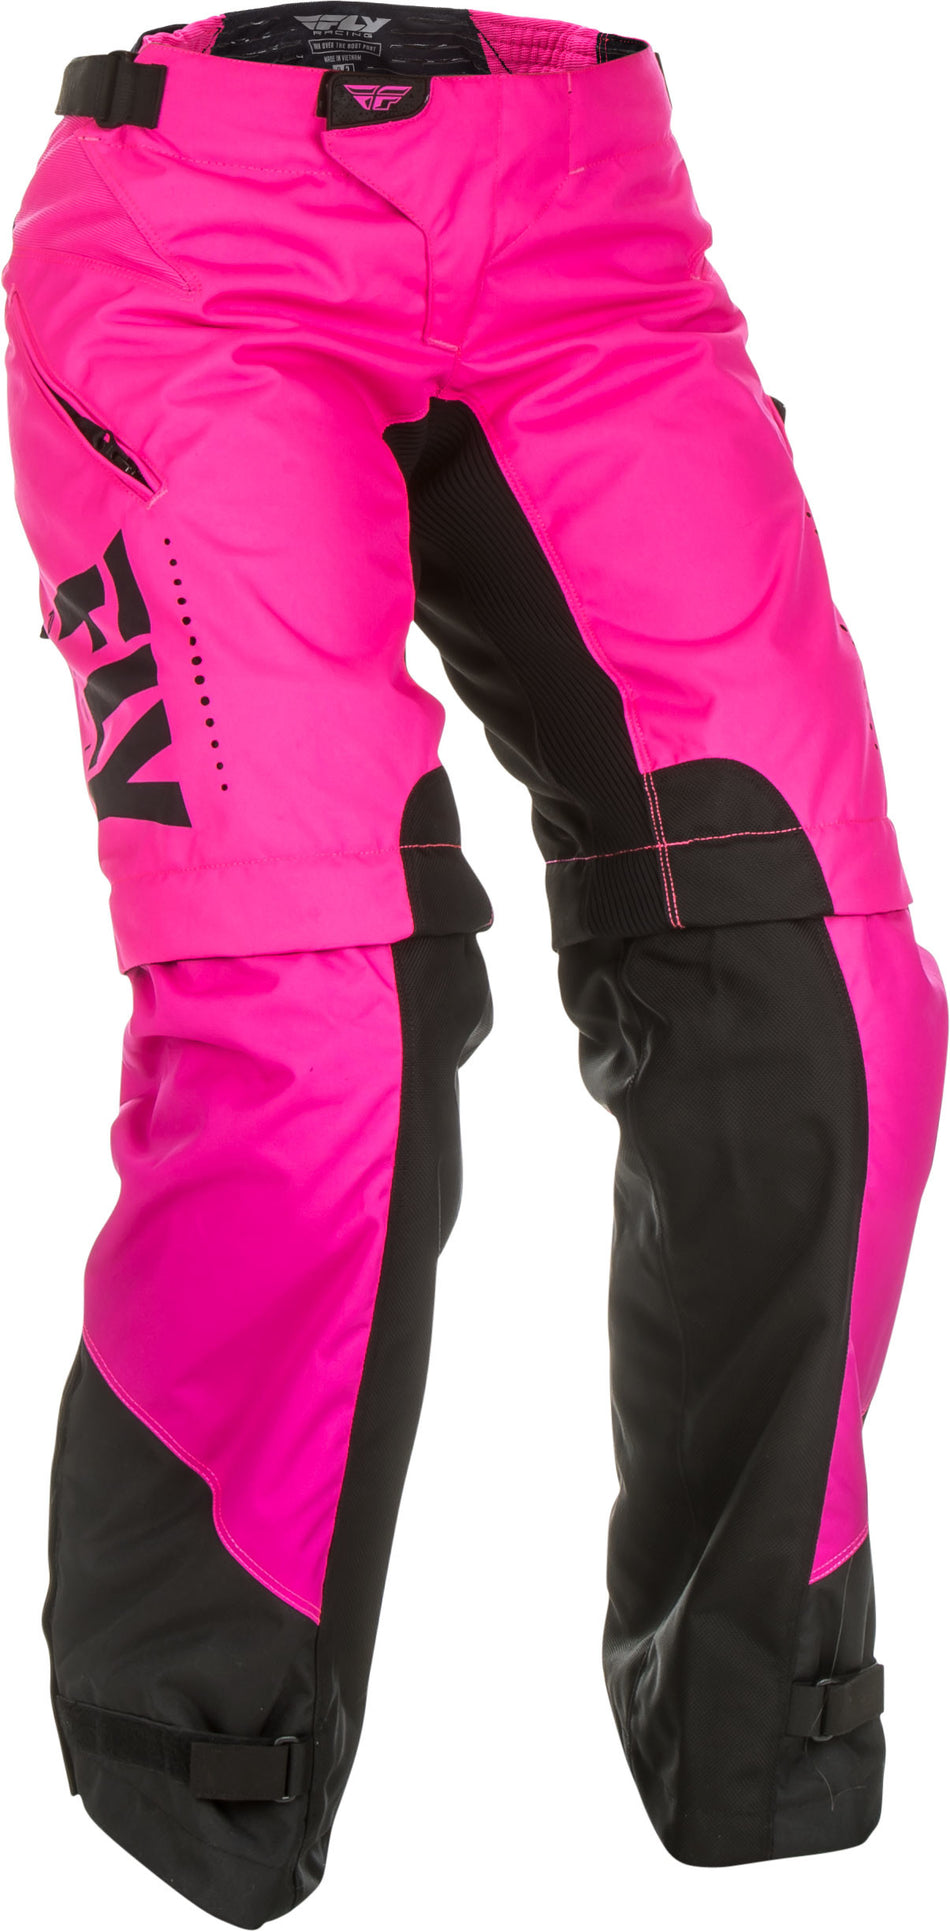 FLY RACING Women's Over Boot Pants Neon Pink/Black Sz 15/16 372-65811